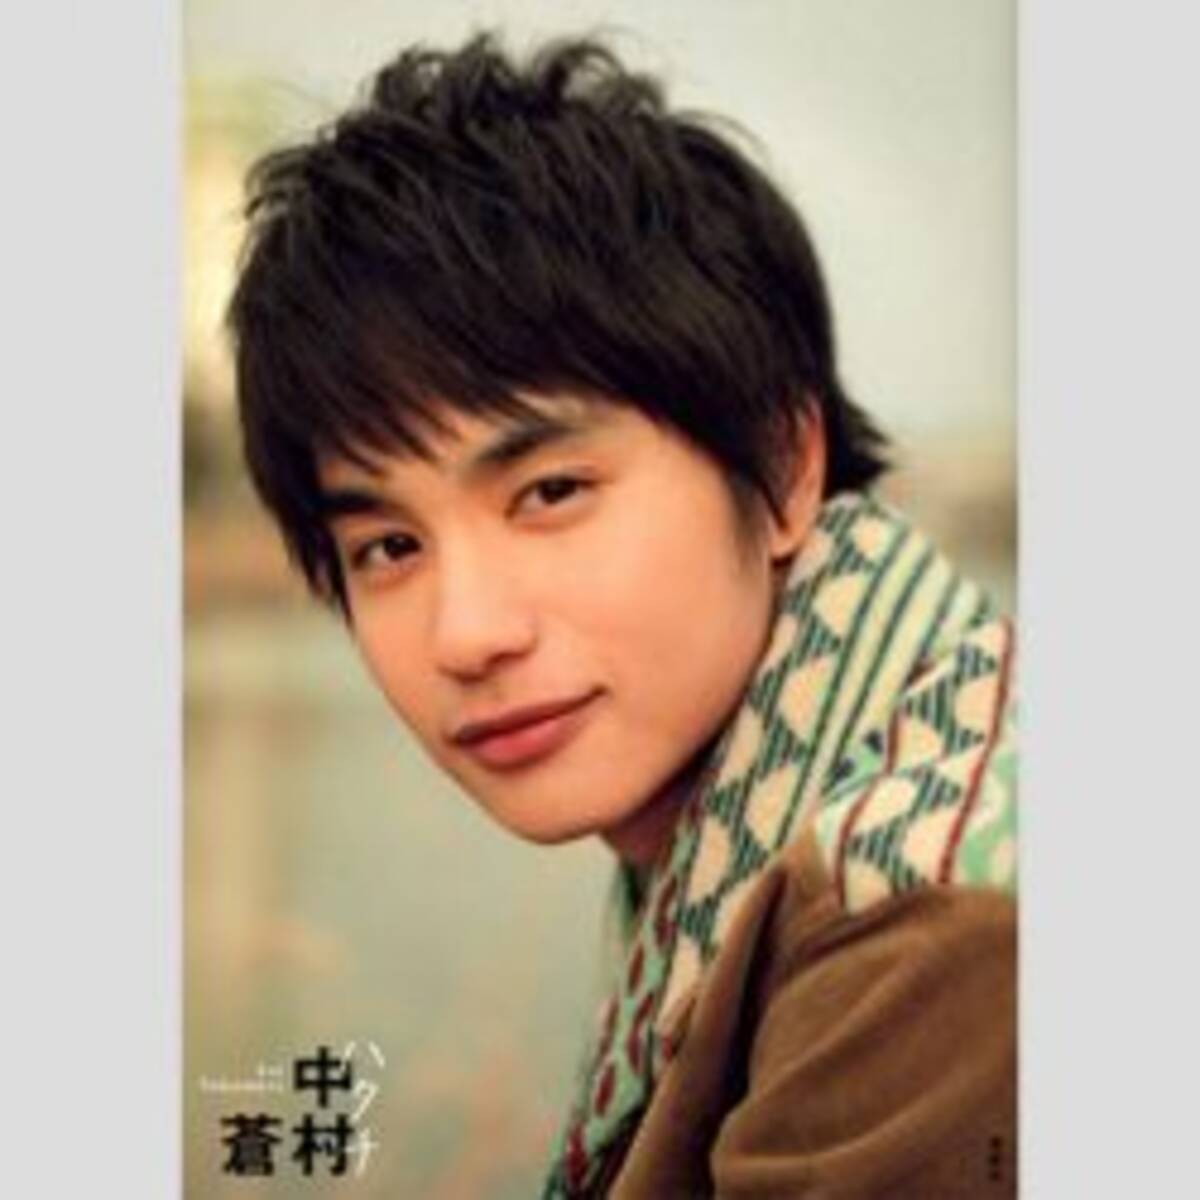 パッとしないところがいい イケメン俳優 中村蒼の演技力に熱視線 16年12月3日 エキサイトニュース